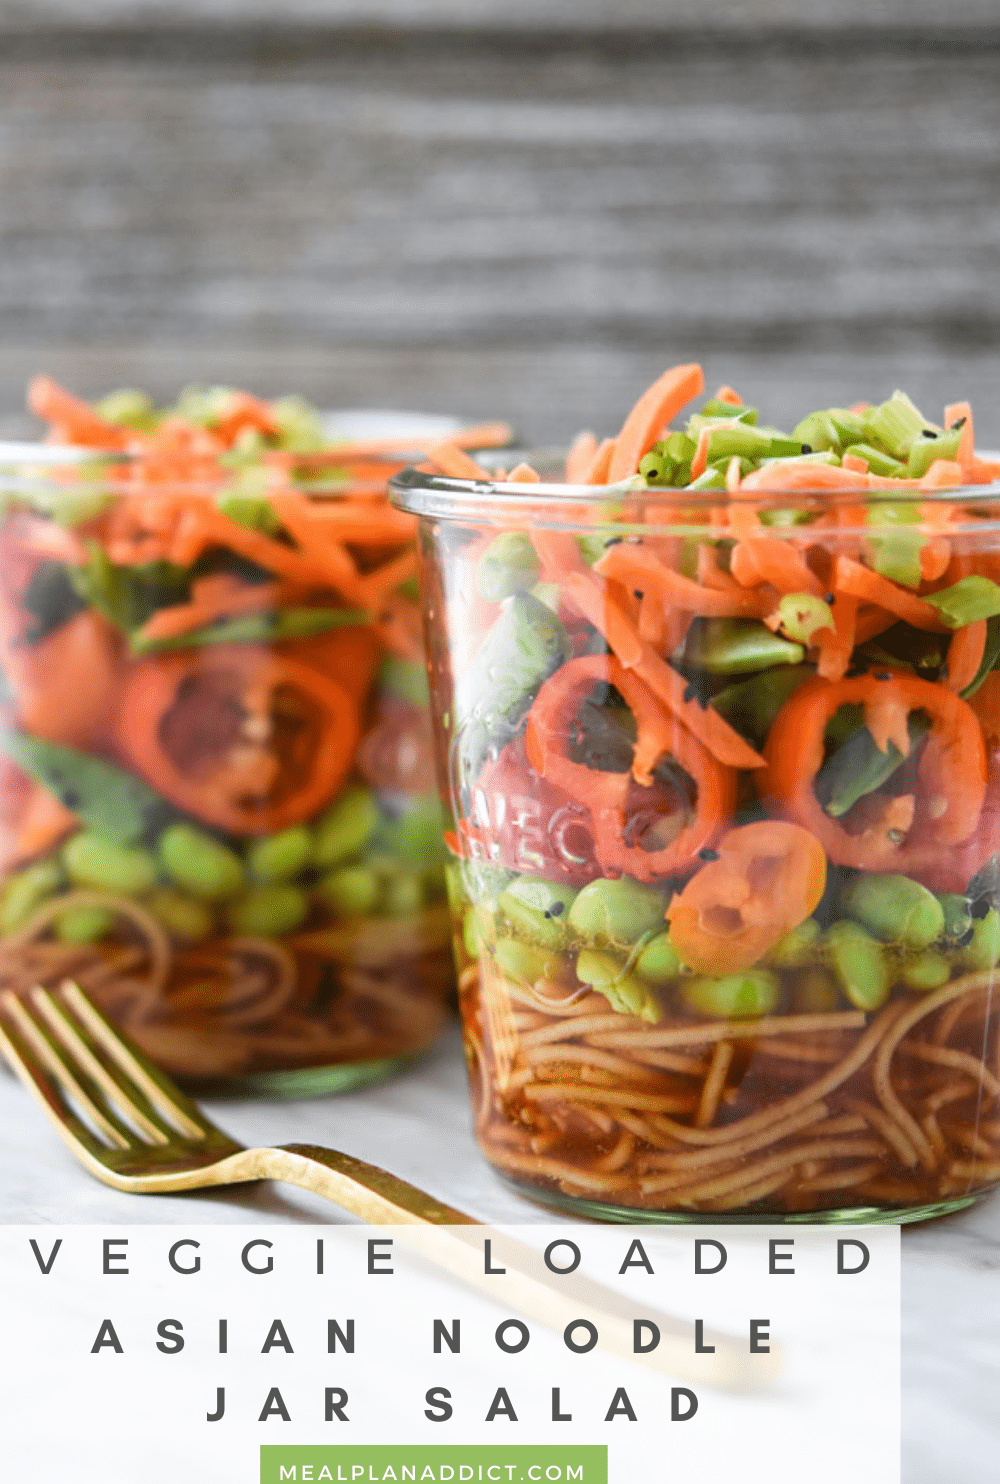 Asian noodle jar salad pin for Pinterest